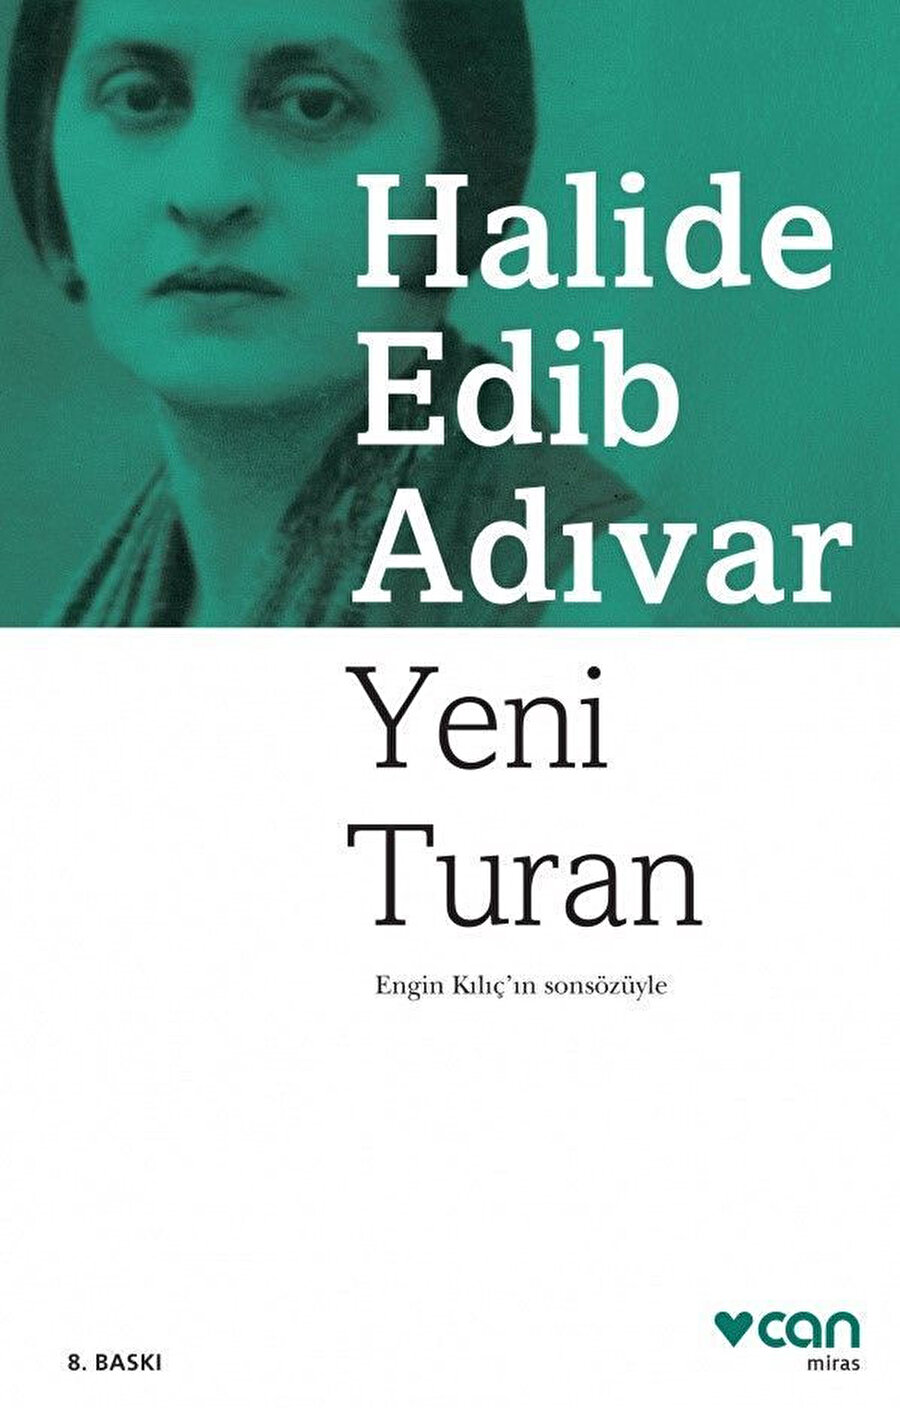 Halide Edib Adıvar, "Yeni Turan" kitabını 1912 yılında yayınladı.